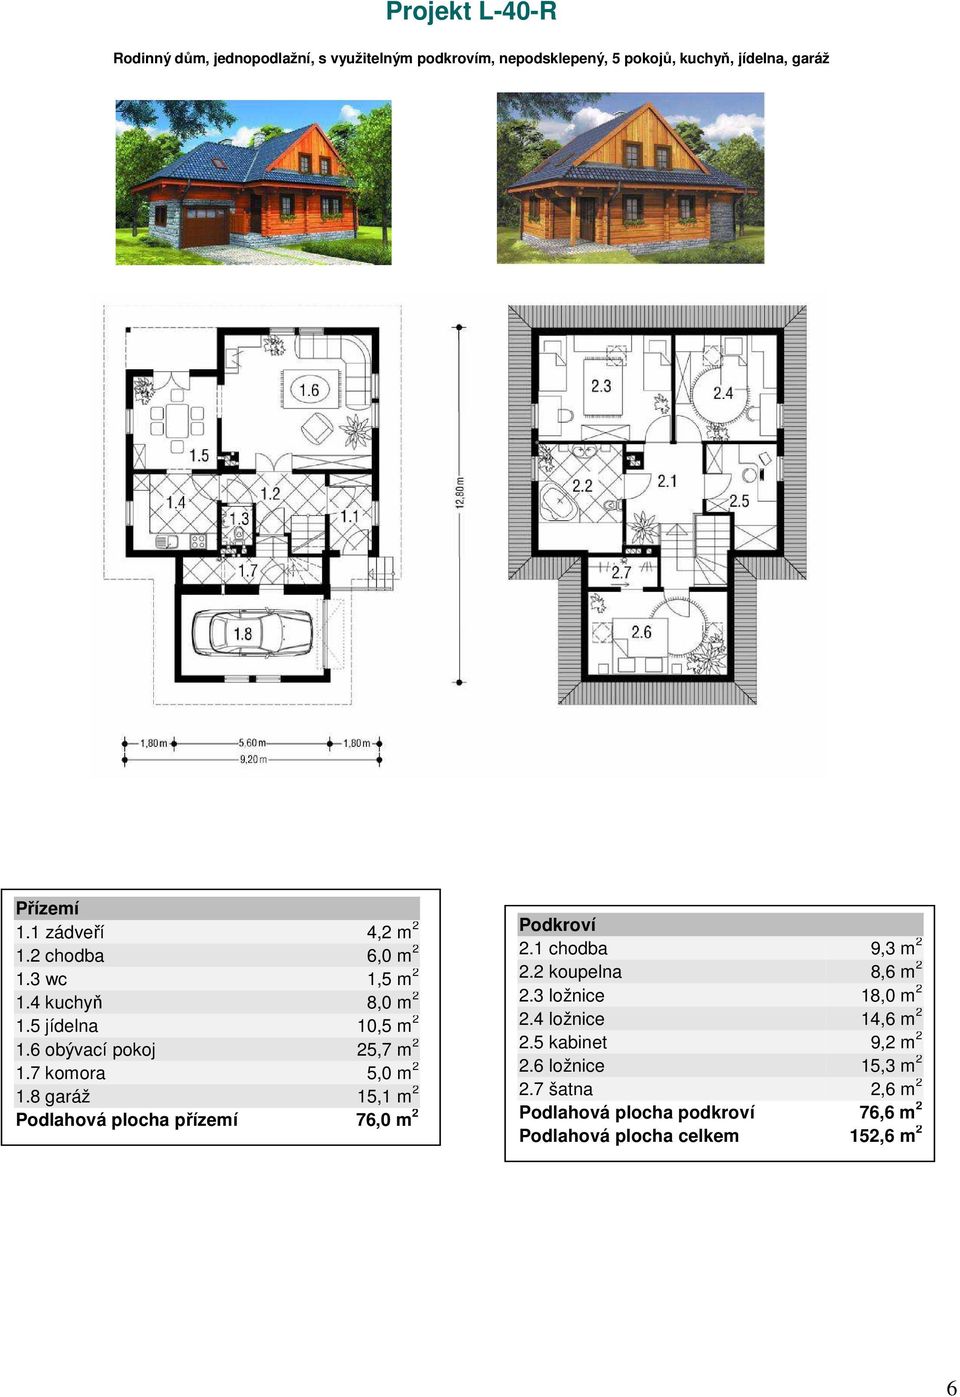 7 komora 5,0 m 2 1.8 garáž 15,1 m 2 Podlahová plocha přízemí 76,0 m 2 2.1 chodba 9,3 m 2 2.2 koupelna 8,6 m 2 2.